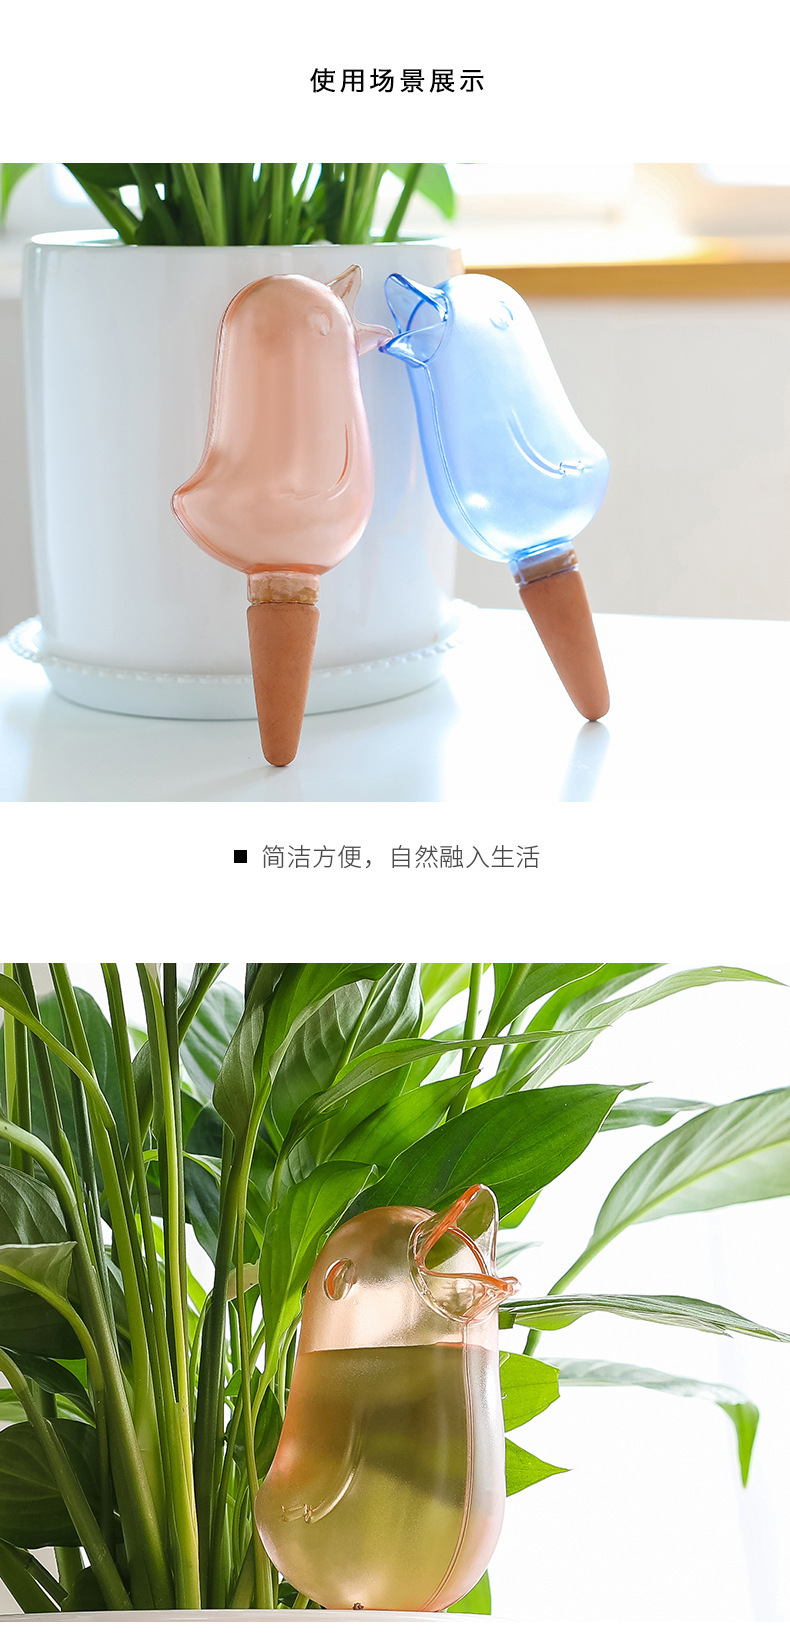 創意小鳥造型自動澆水器 可愛透明懶人澆花器 創意自動滴水器3